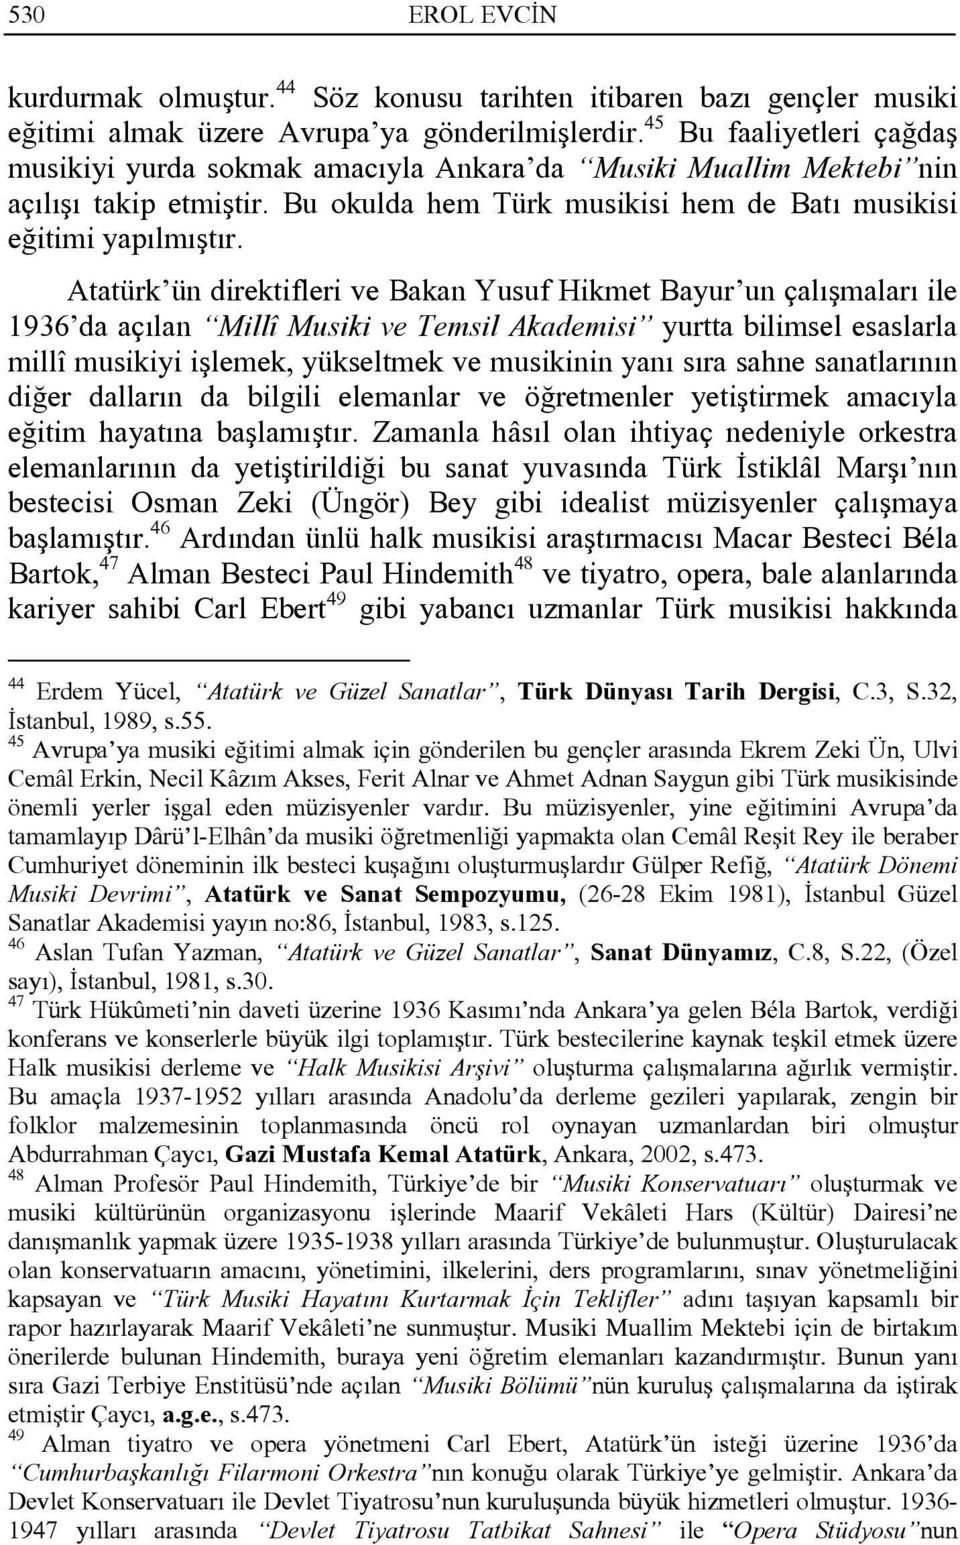 Atatürk ün direktifleri ve Bakan Yusuf Hikmet Bayur un çalışmaları ile 1936 da açılan Millî Musiki ve Temsil Akademisi yurtta bilimsel esaslarla millî musikiyi işlemek, yükseltmek ve musikinin yanı